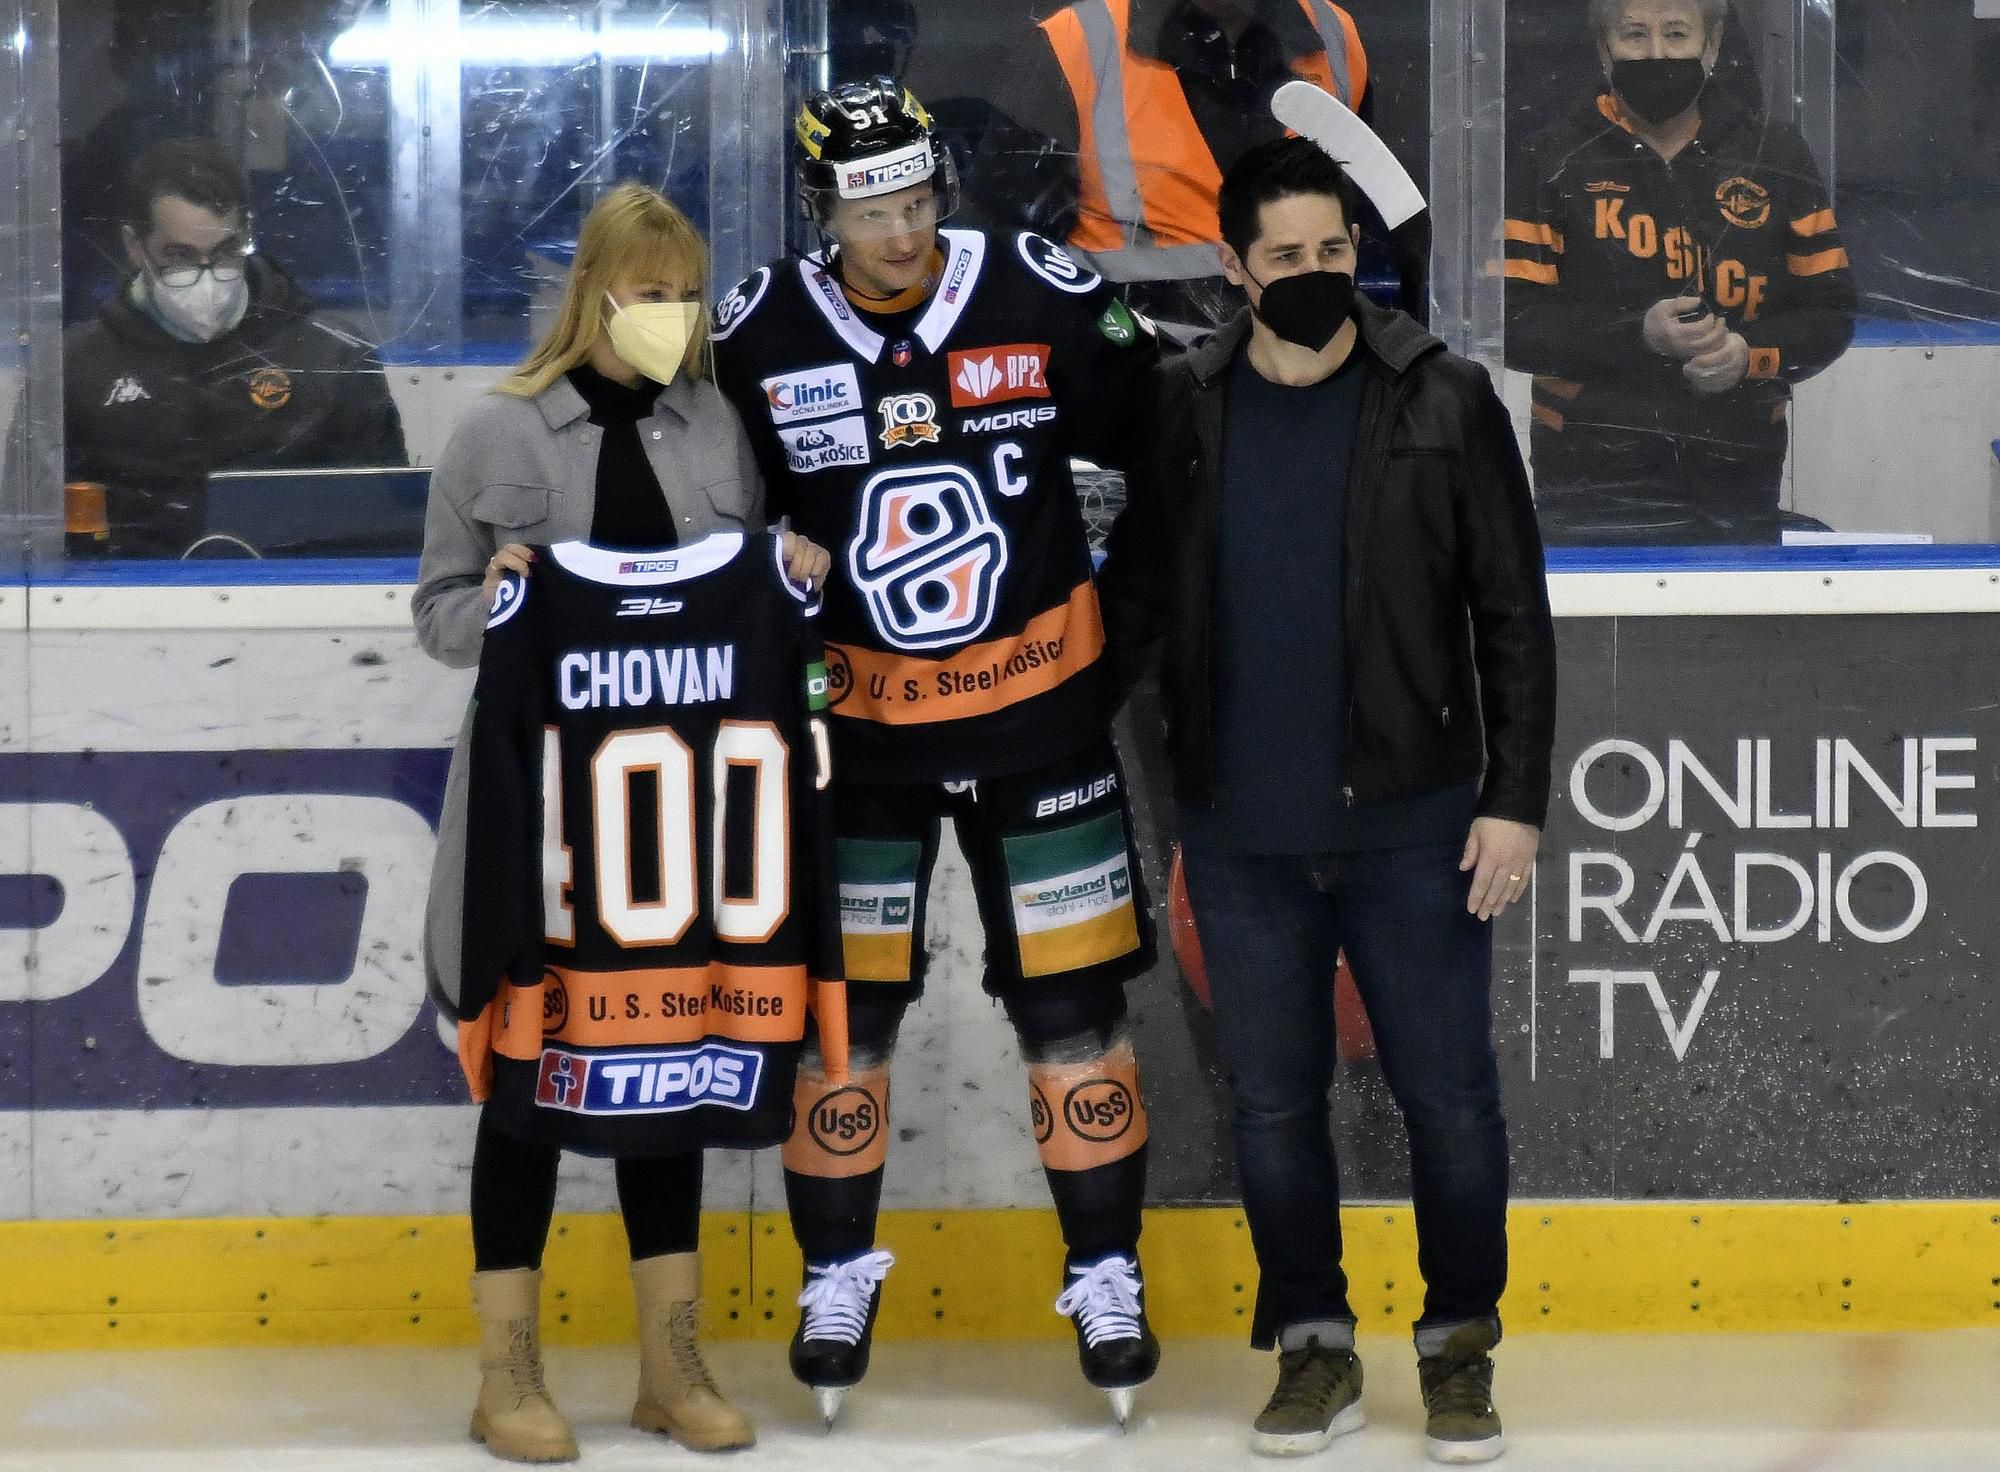 Michal Chovan si preberá dres za 400 asistencií v najvyššej slovenskej hokejovej súťaži